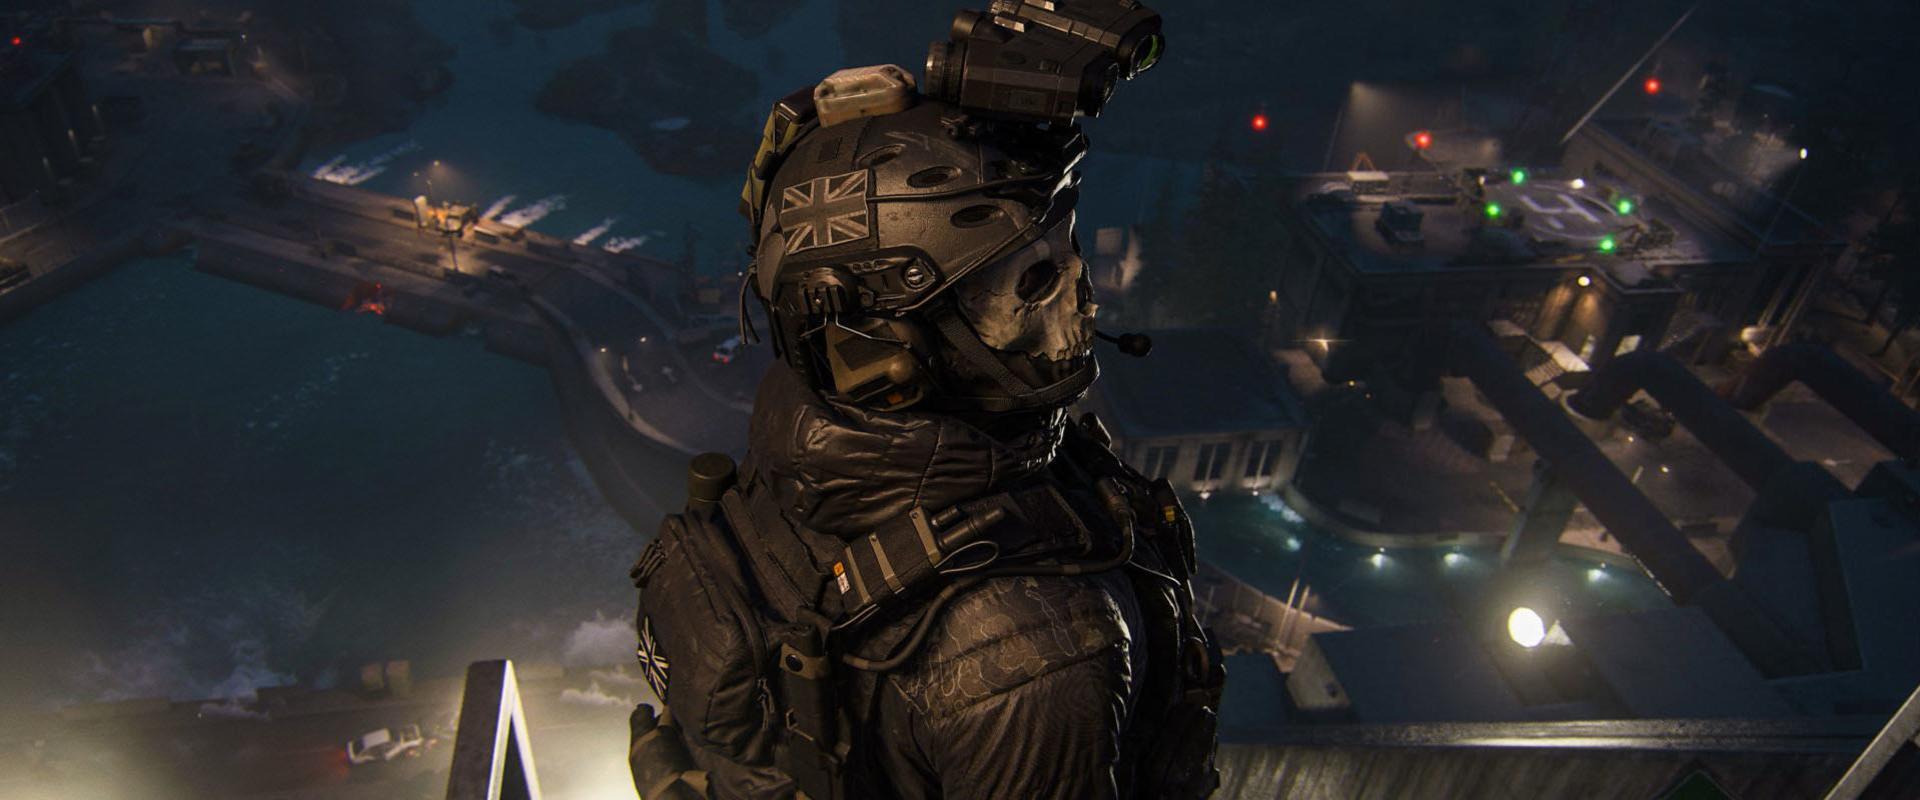 Game Pass: Hiába a félelmek, továbbra sem kivételezne a Call of Duty-val az Xbox